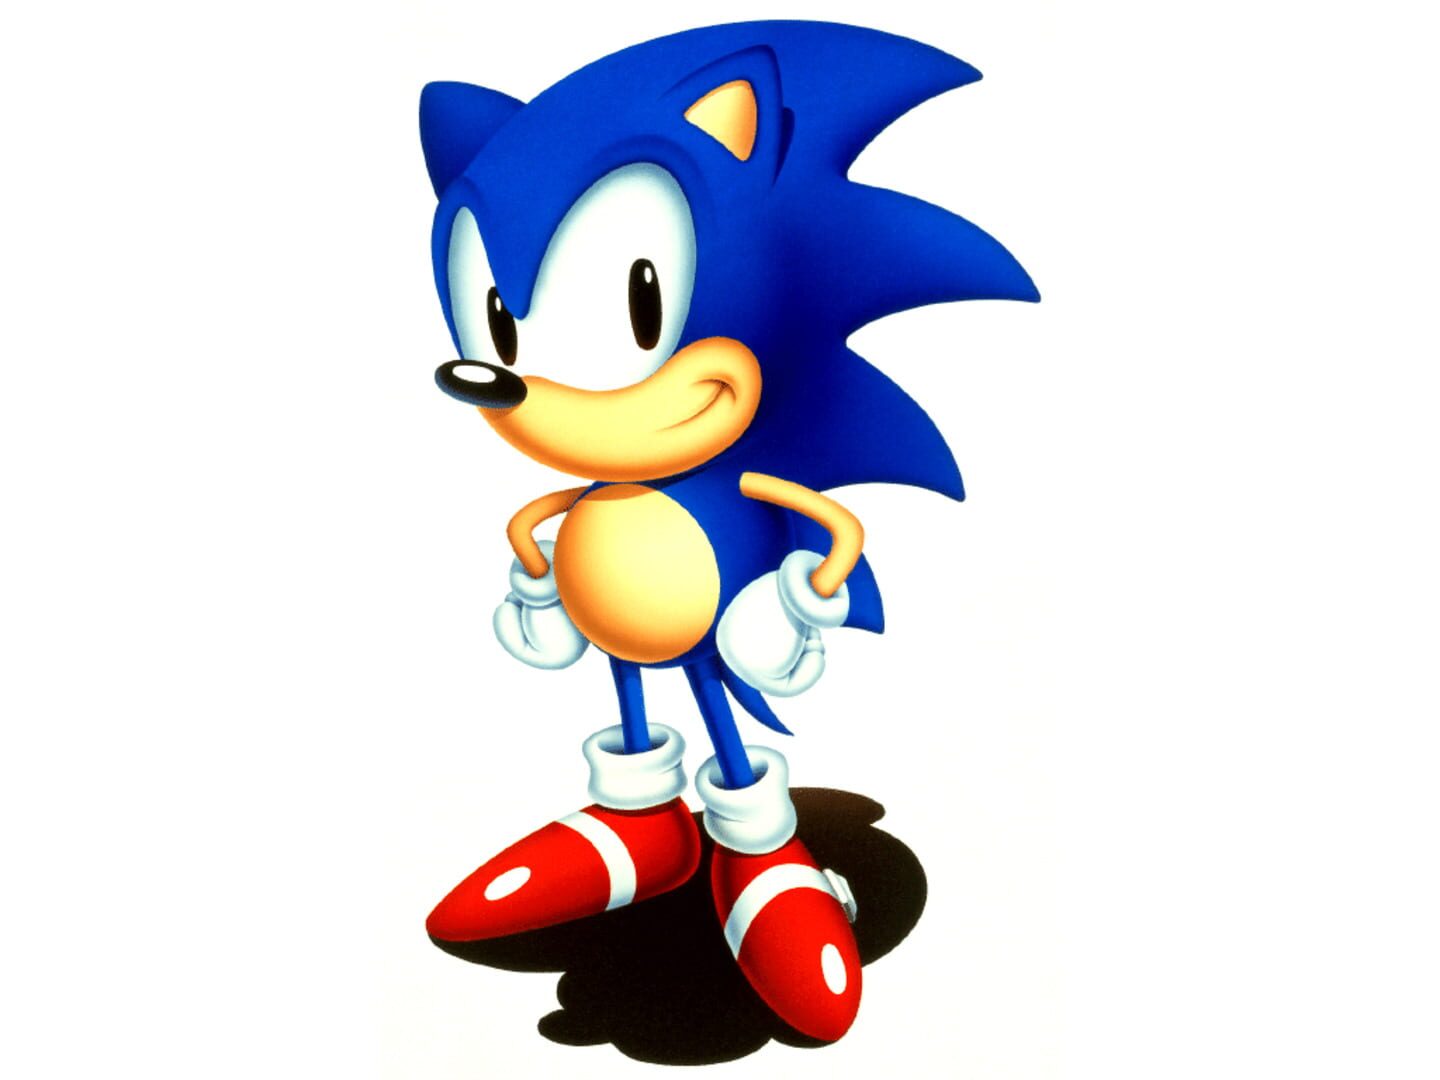 Arte - Sonic the Hedgehog 2